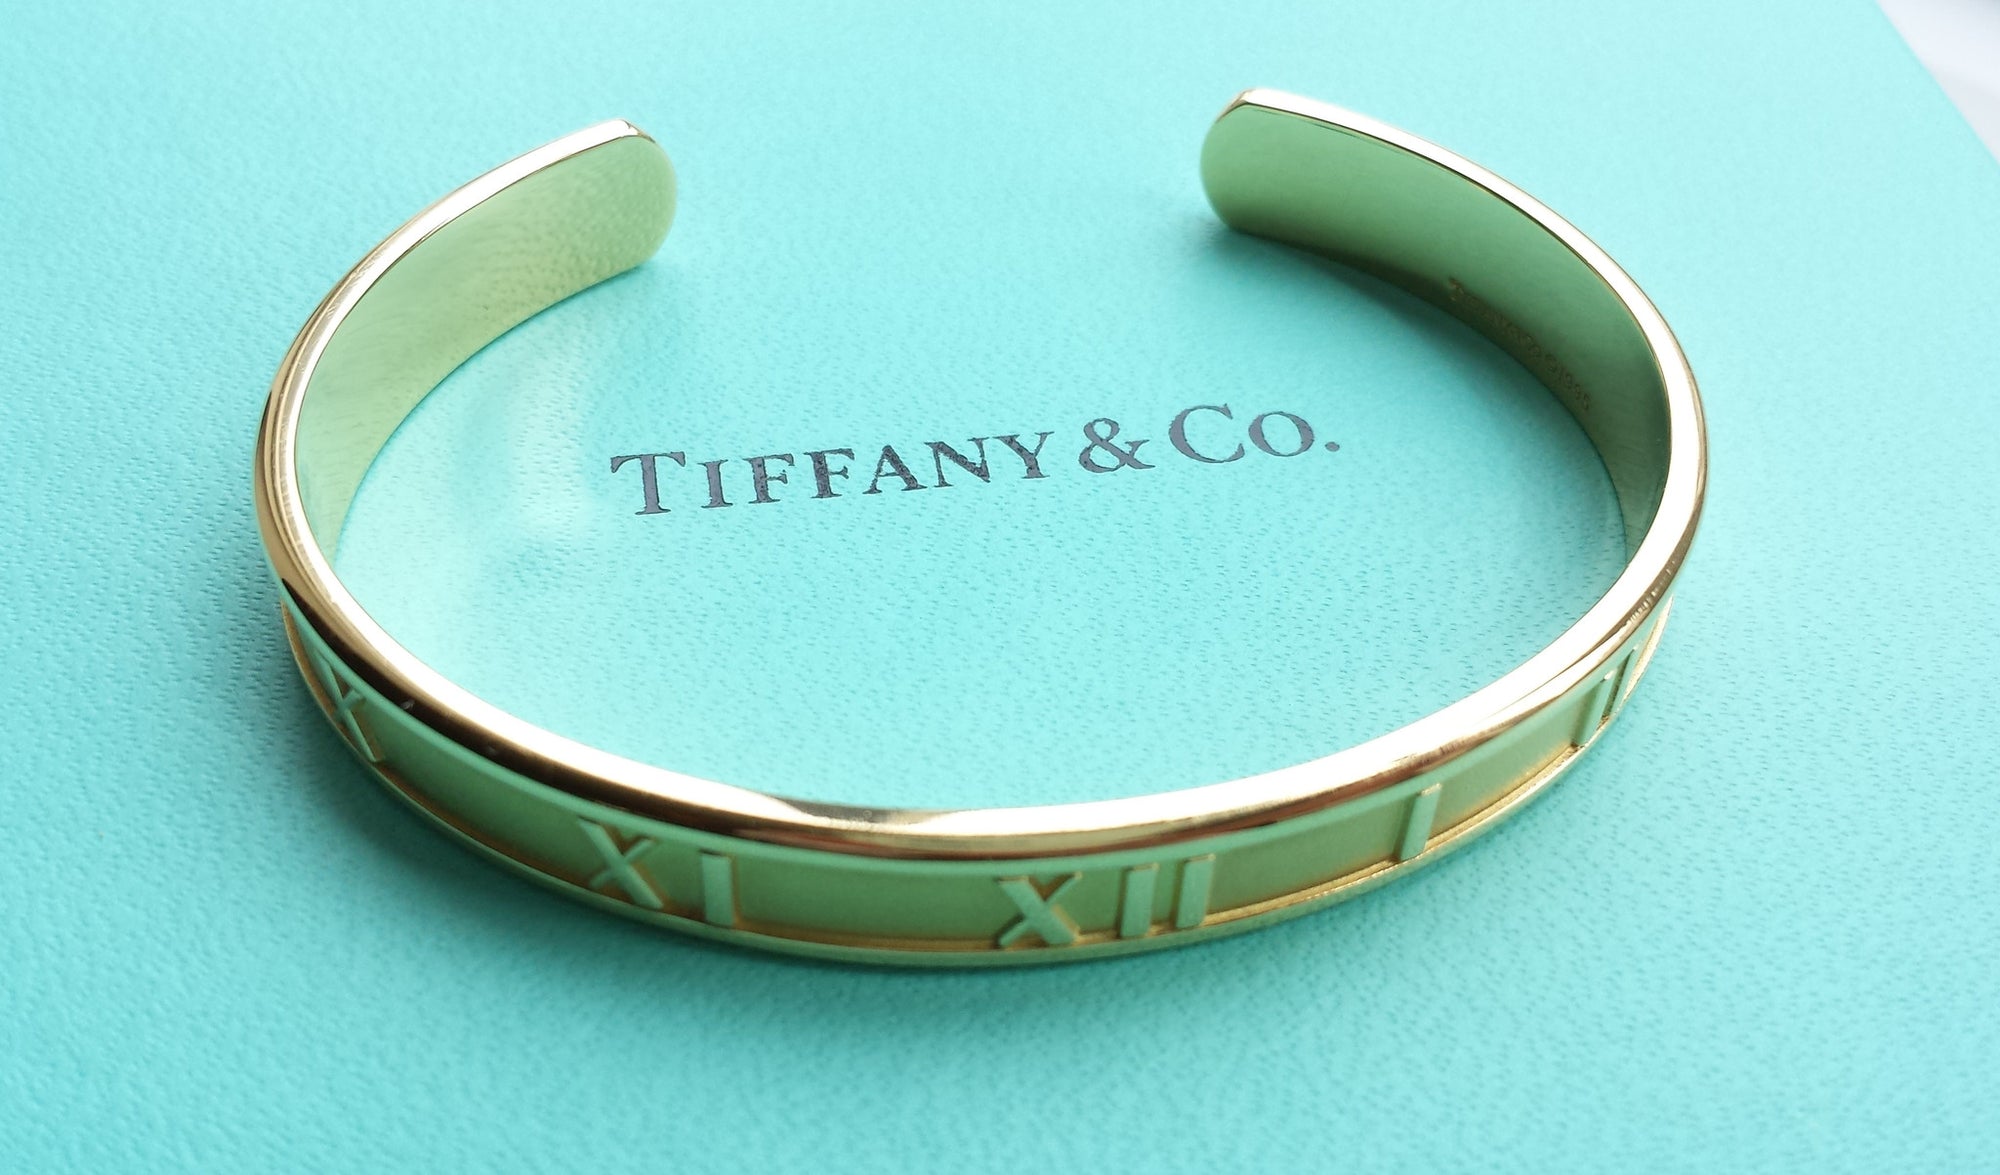 Tiffany & Co. Atlas Open Cuff Bracelet / Bangle in 18K Yellow Gold ...